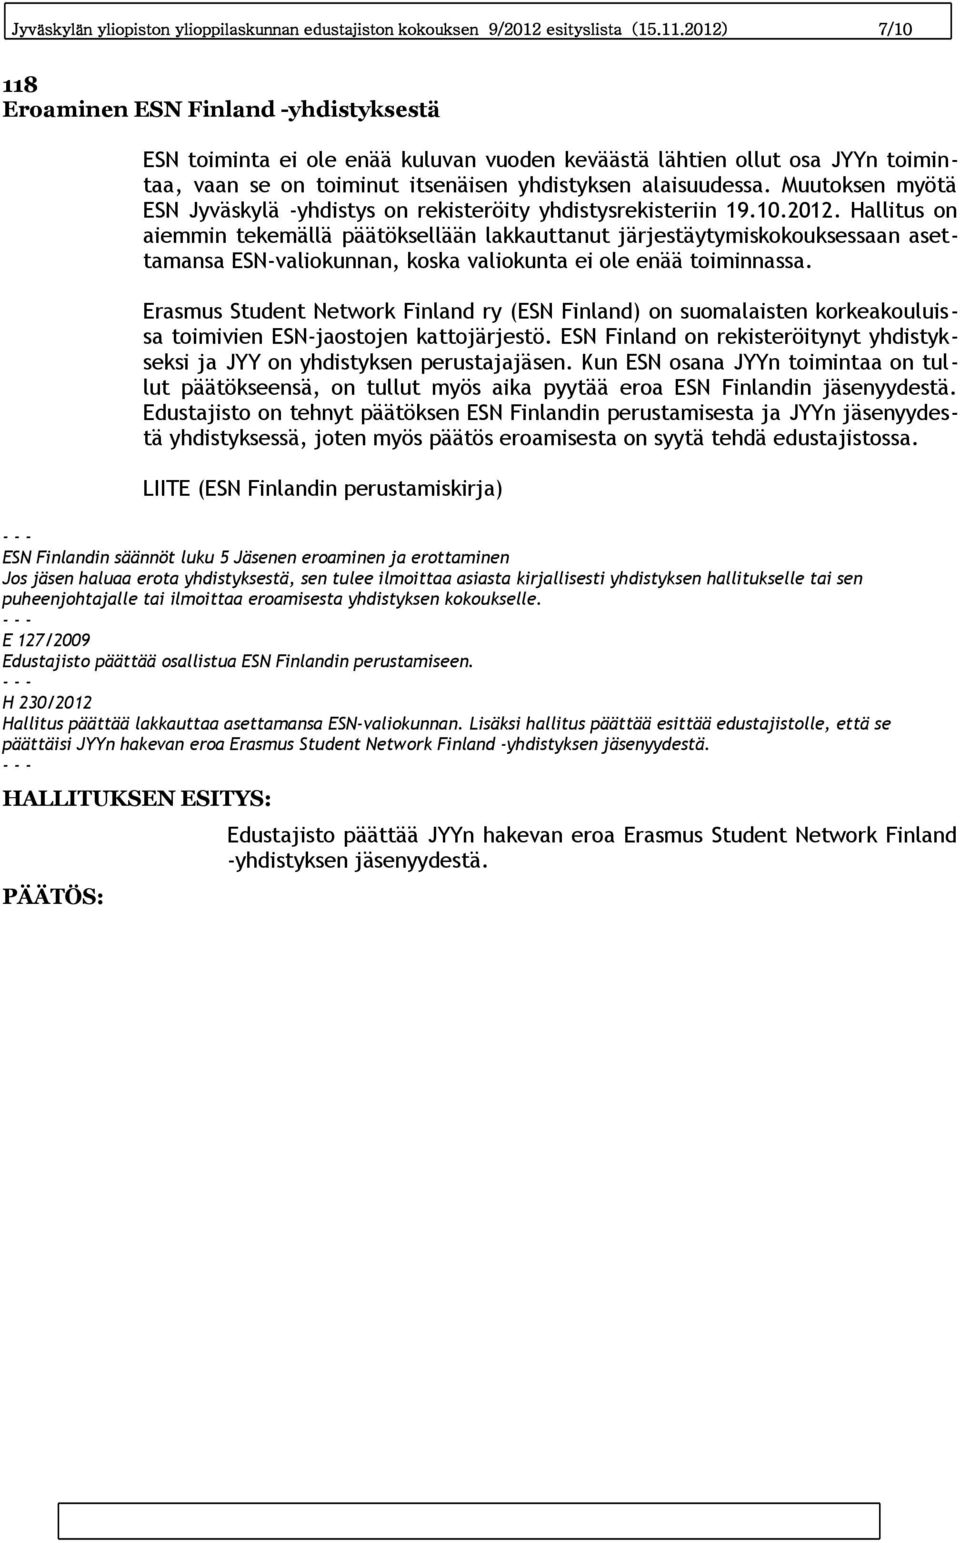 Muutoksen myötä ESN Jyväskylä -yhdistys on rekisteröity yhdistysrekisteriin 19.10.2012.